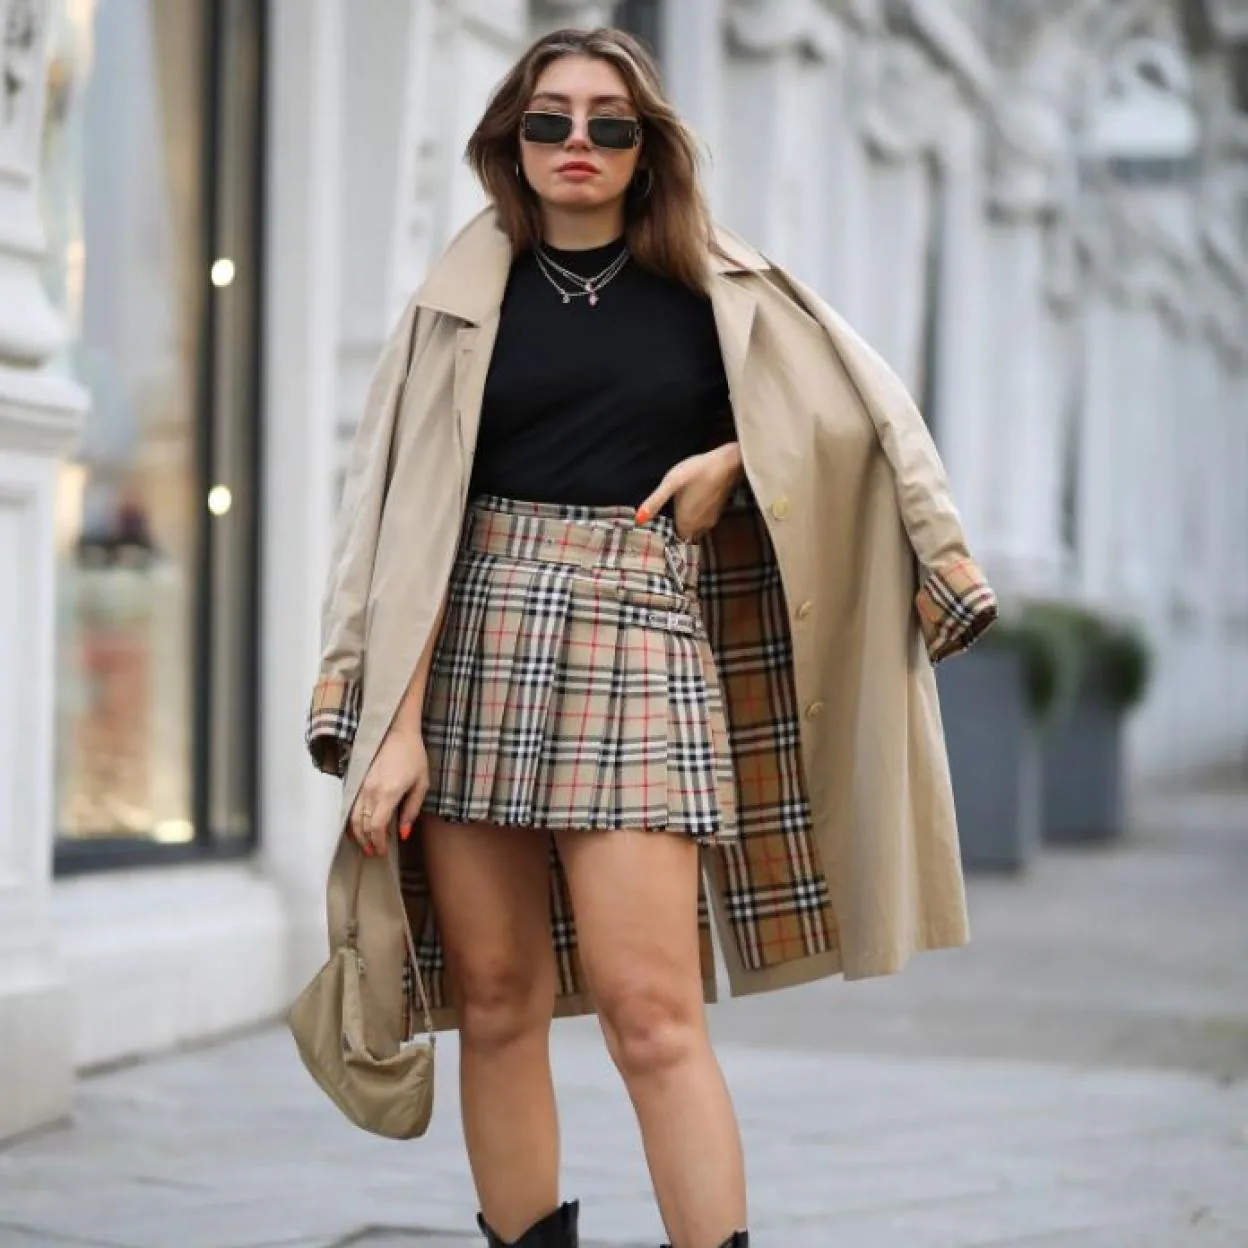 Faldas de tablas: la prenda en tendencia que causa sensación el street style | Mujer